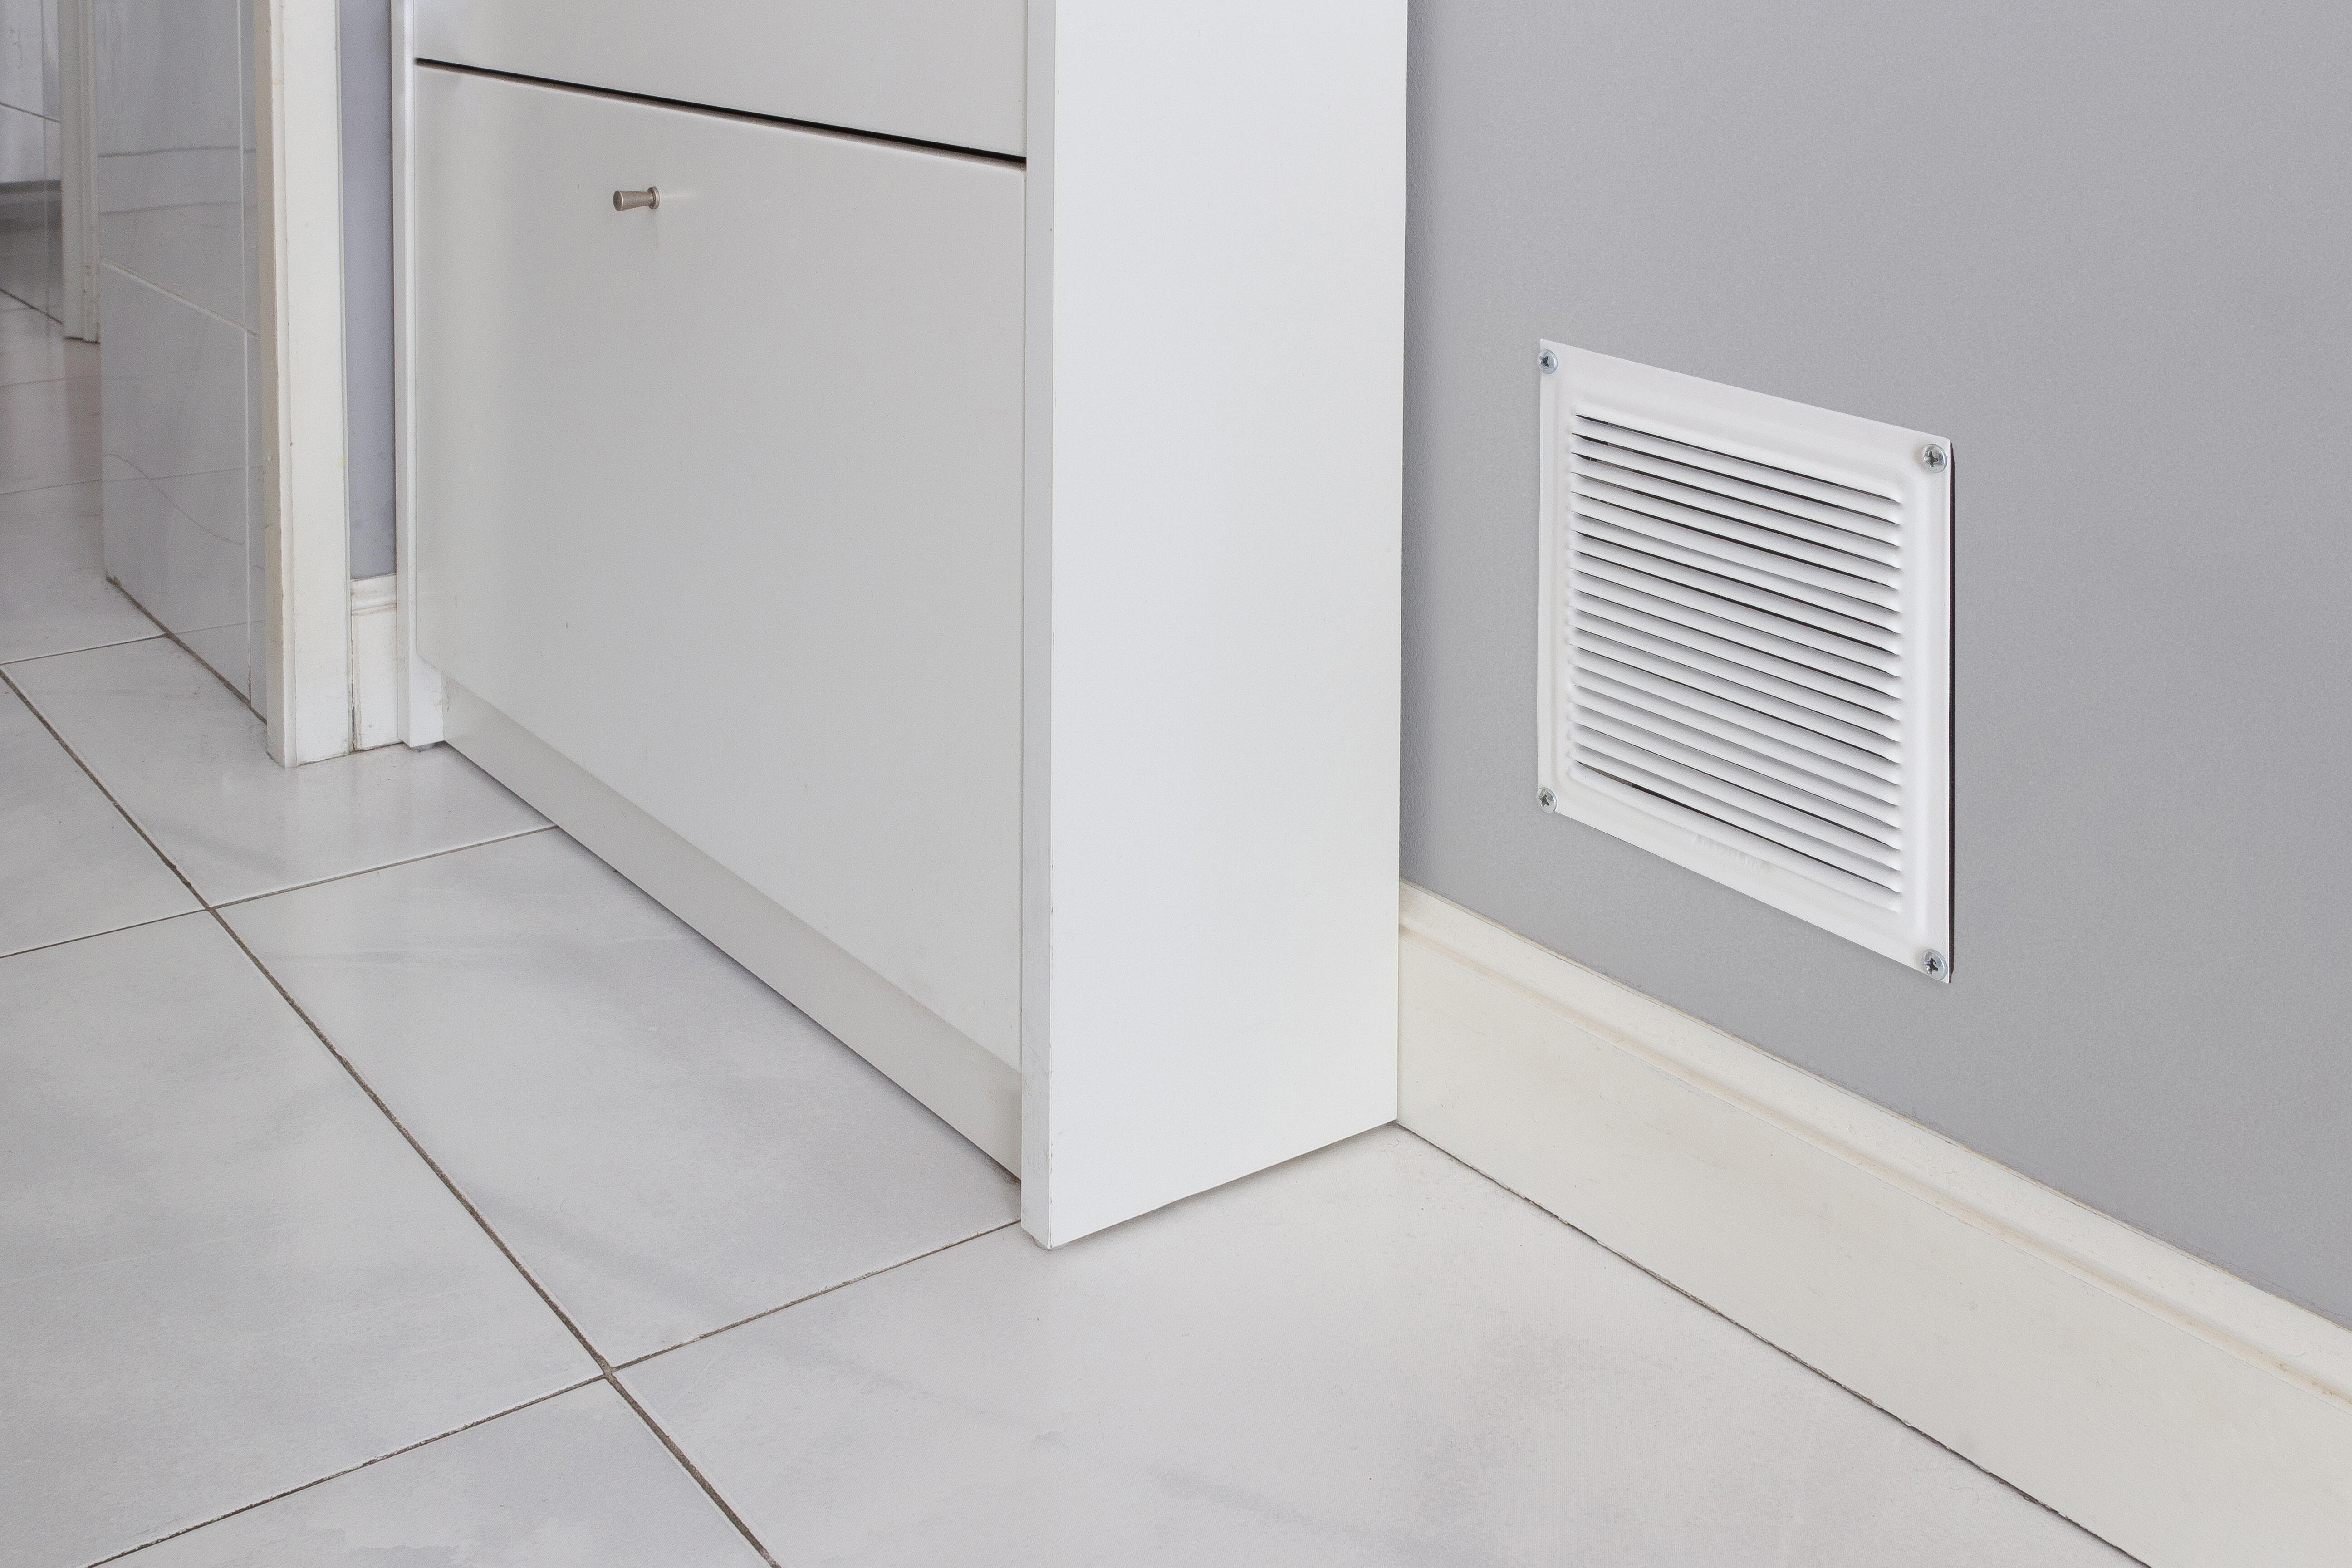 Son necesarias las rejillas de ventilación para el hogar? - Bropro